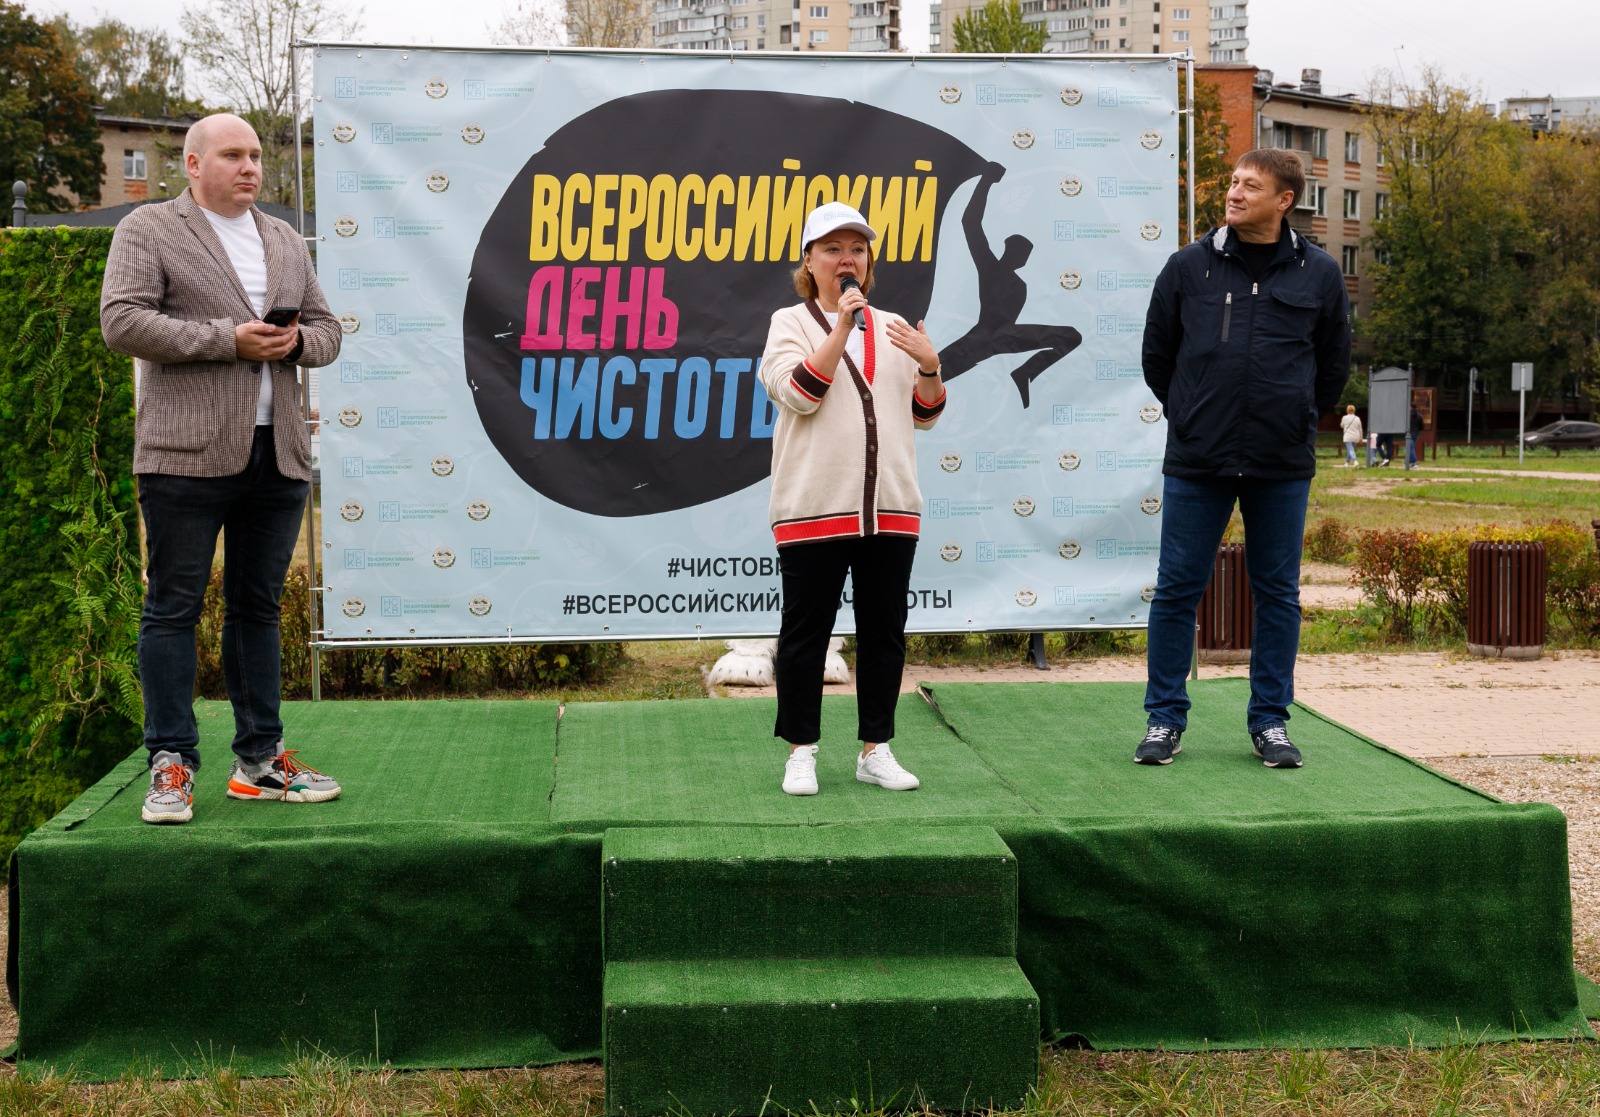 Всероссийский день чистоты объединил эко-волонтёров по всей стране - фото 3